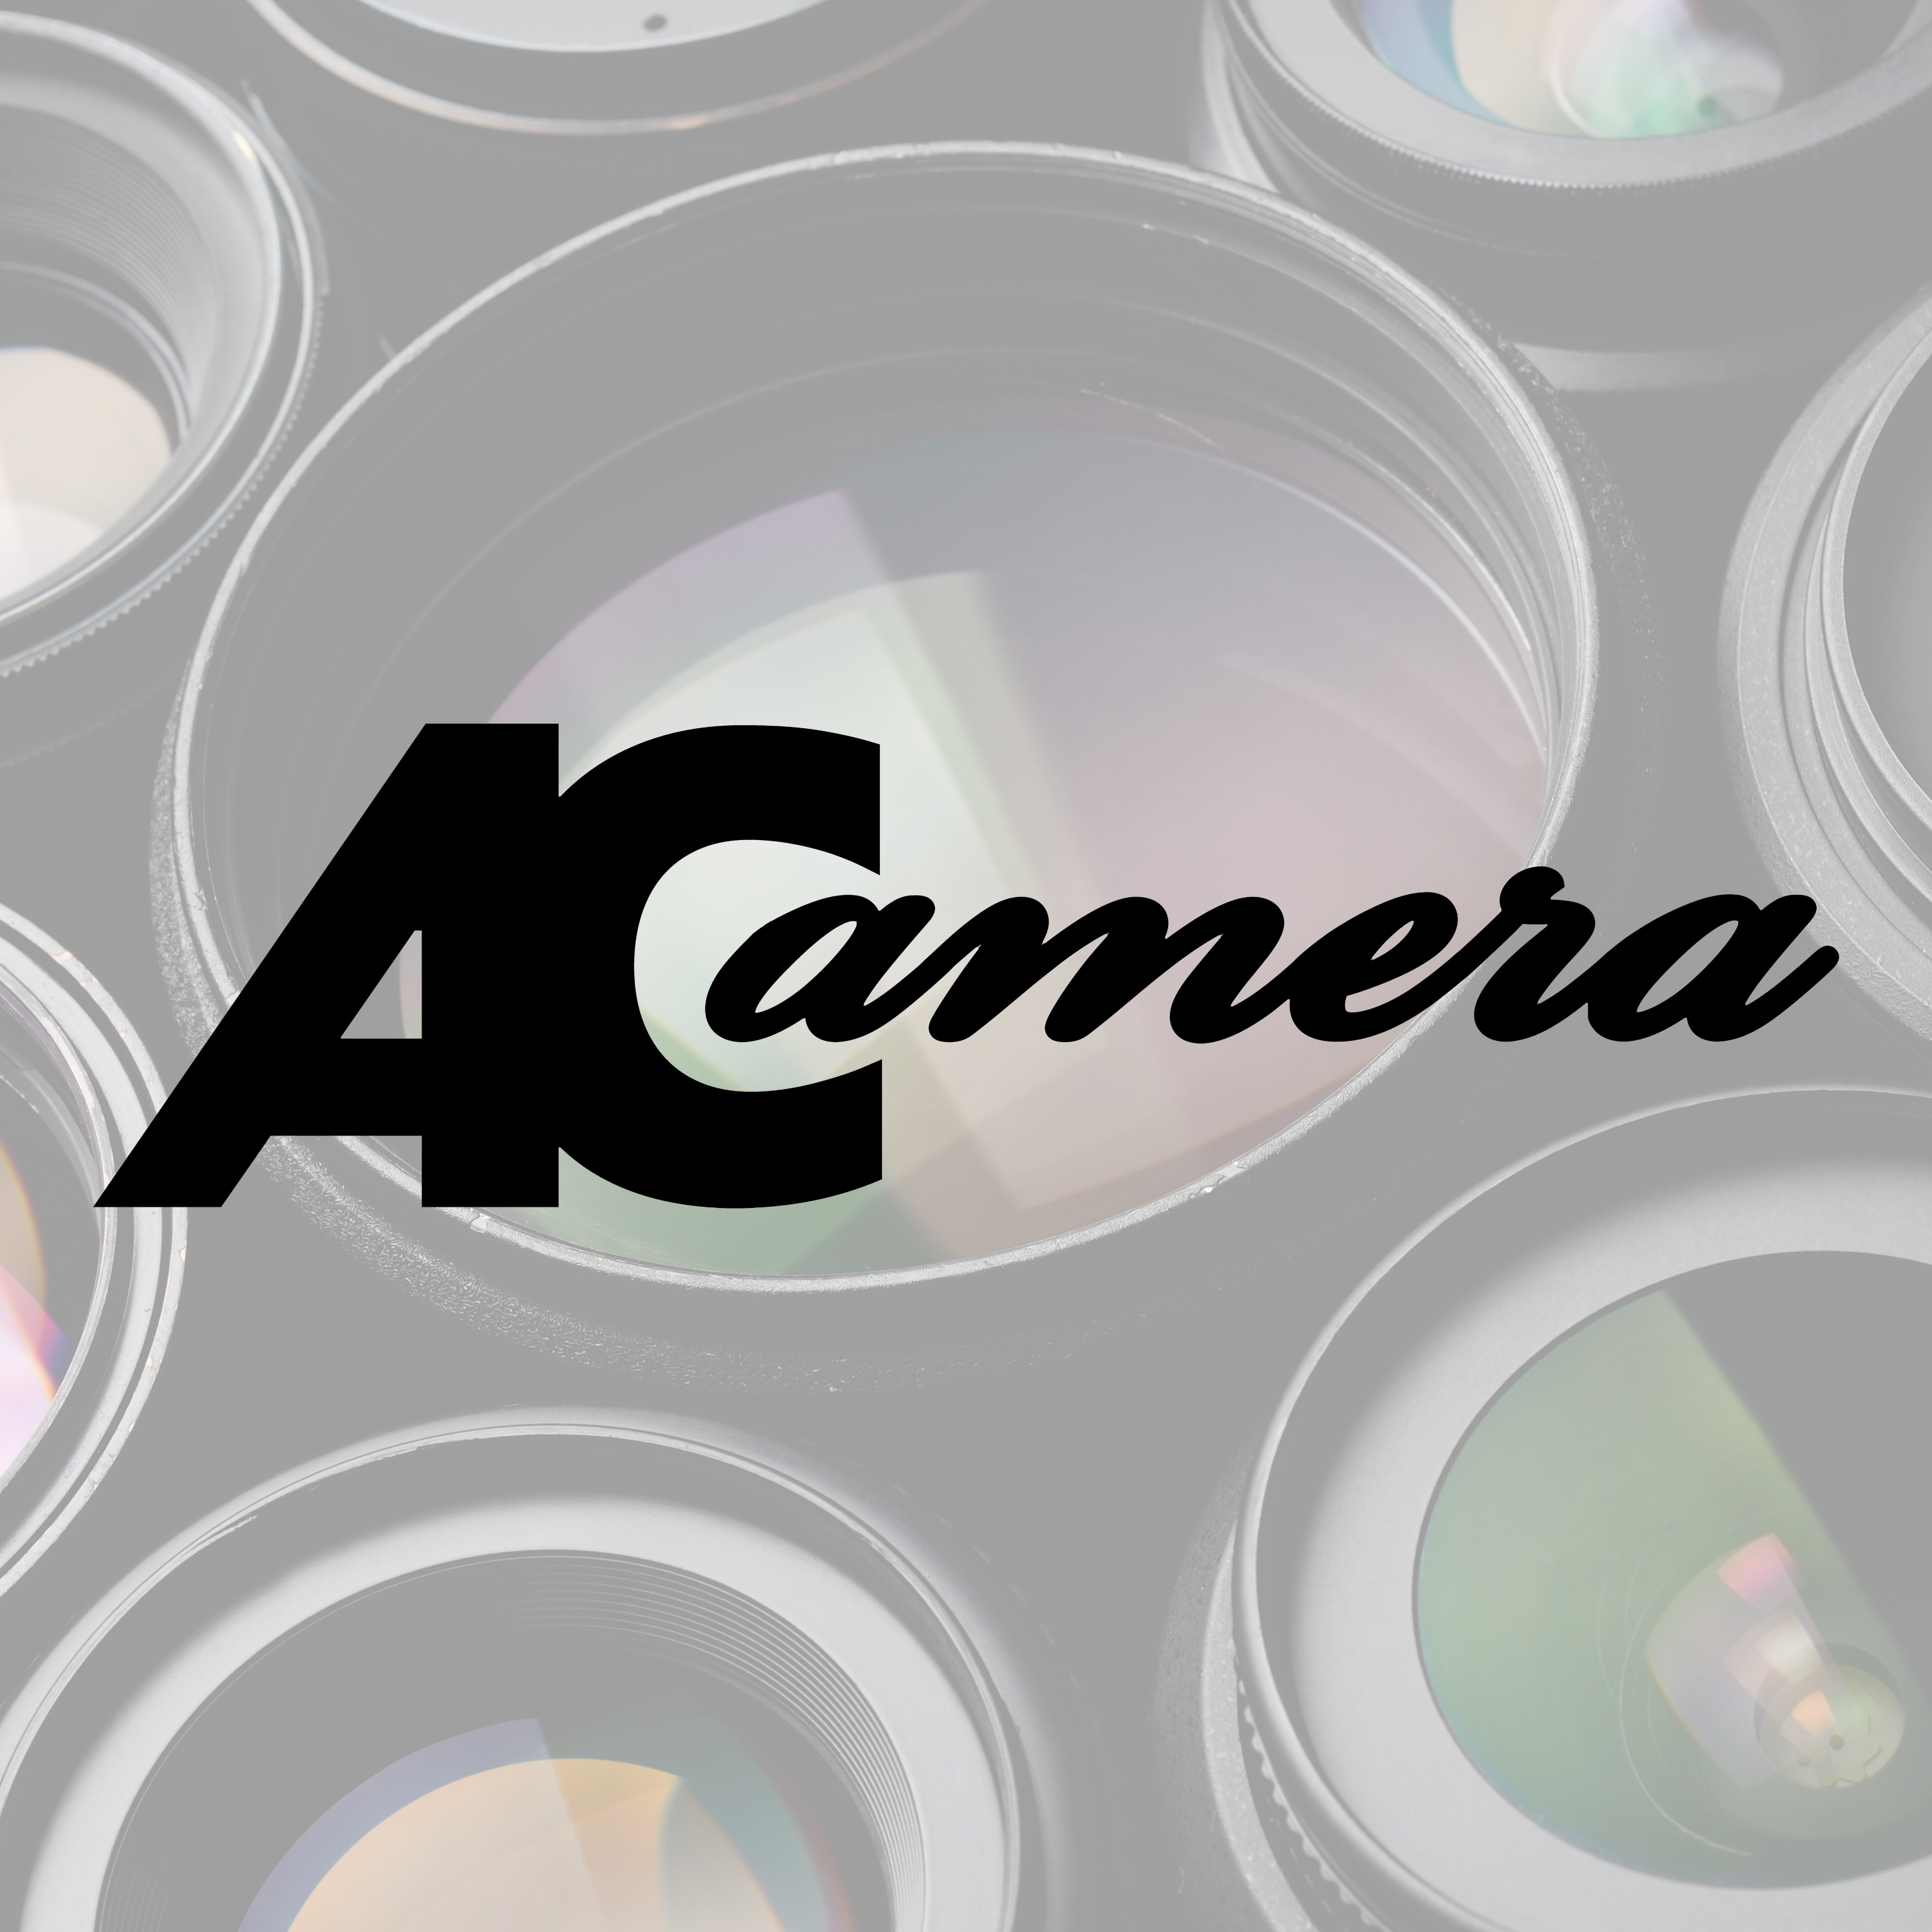 ACamera | Motion Picture Equipment Rentals | Denver Colorado